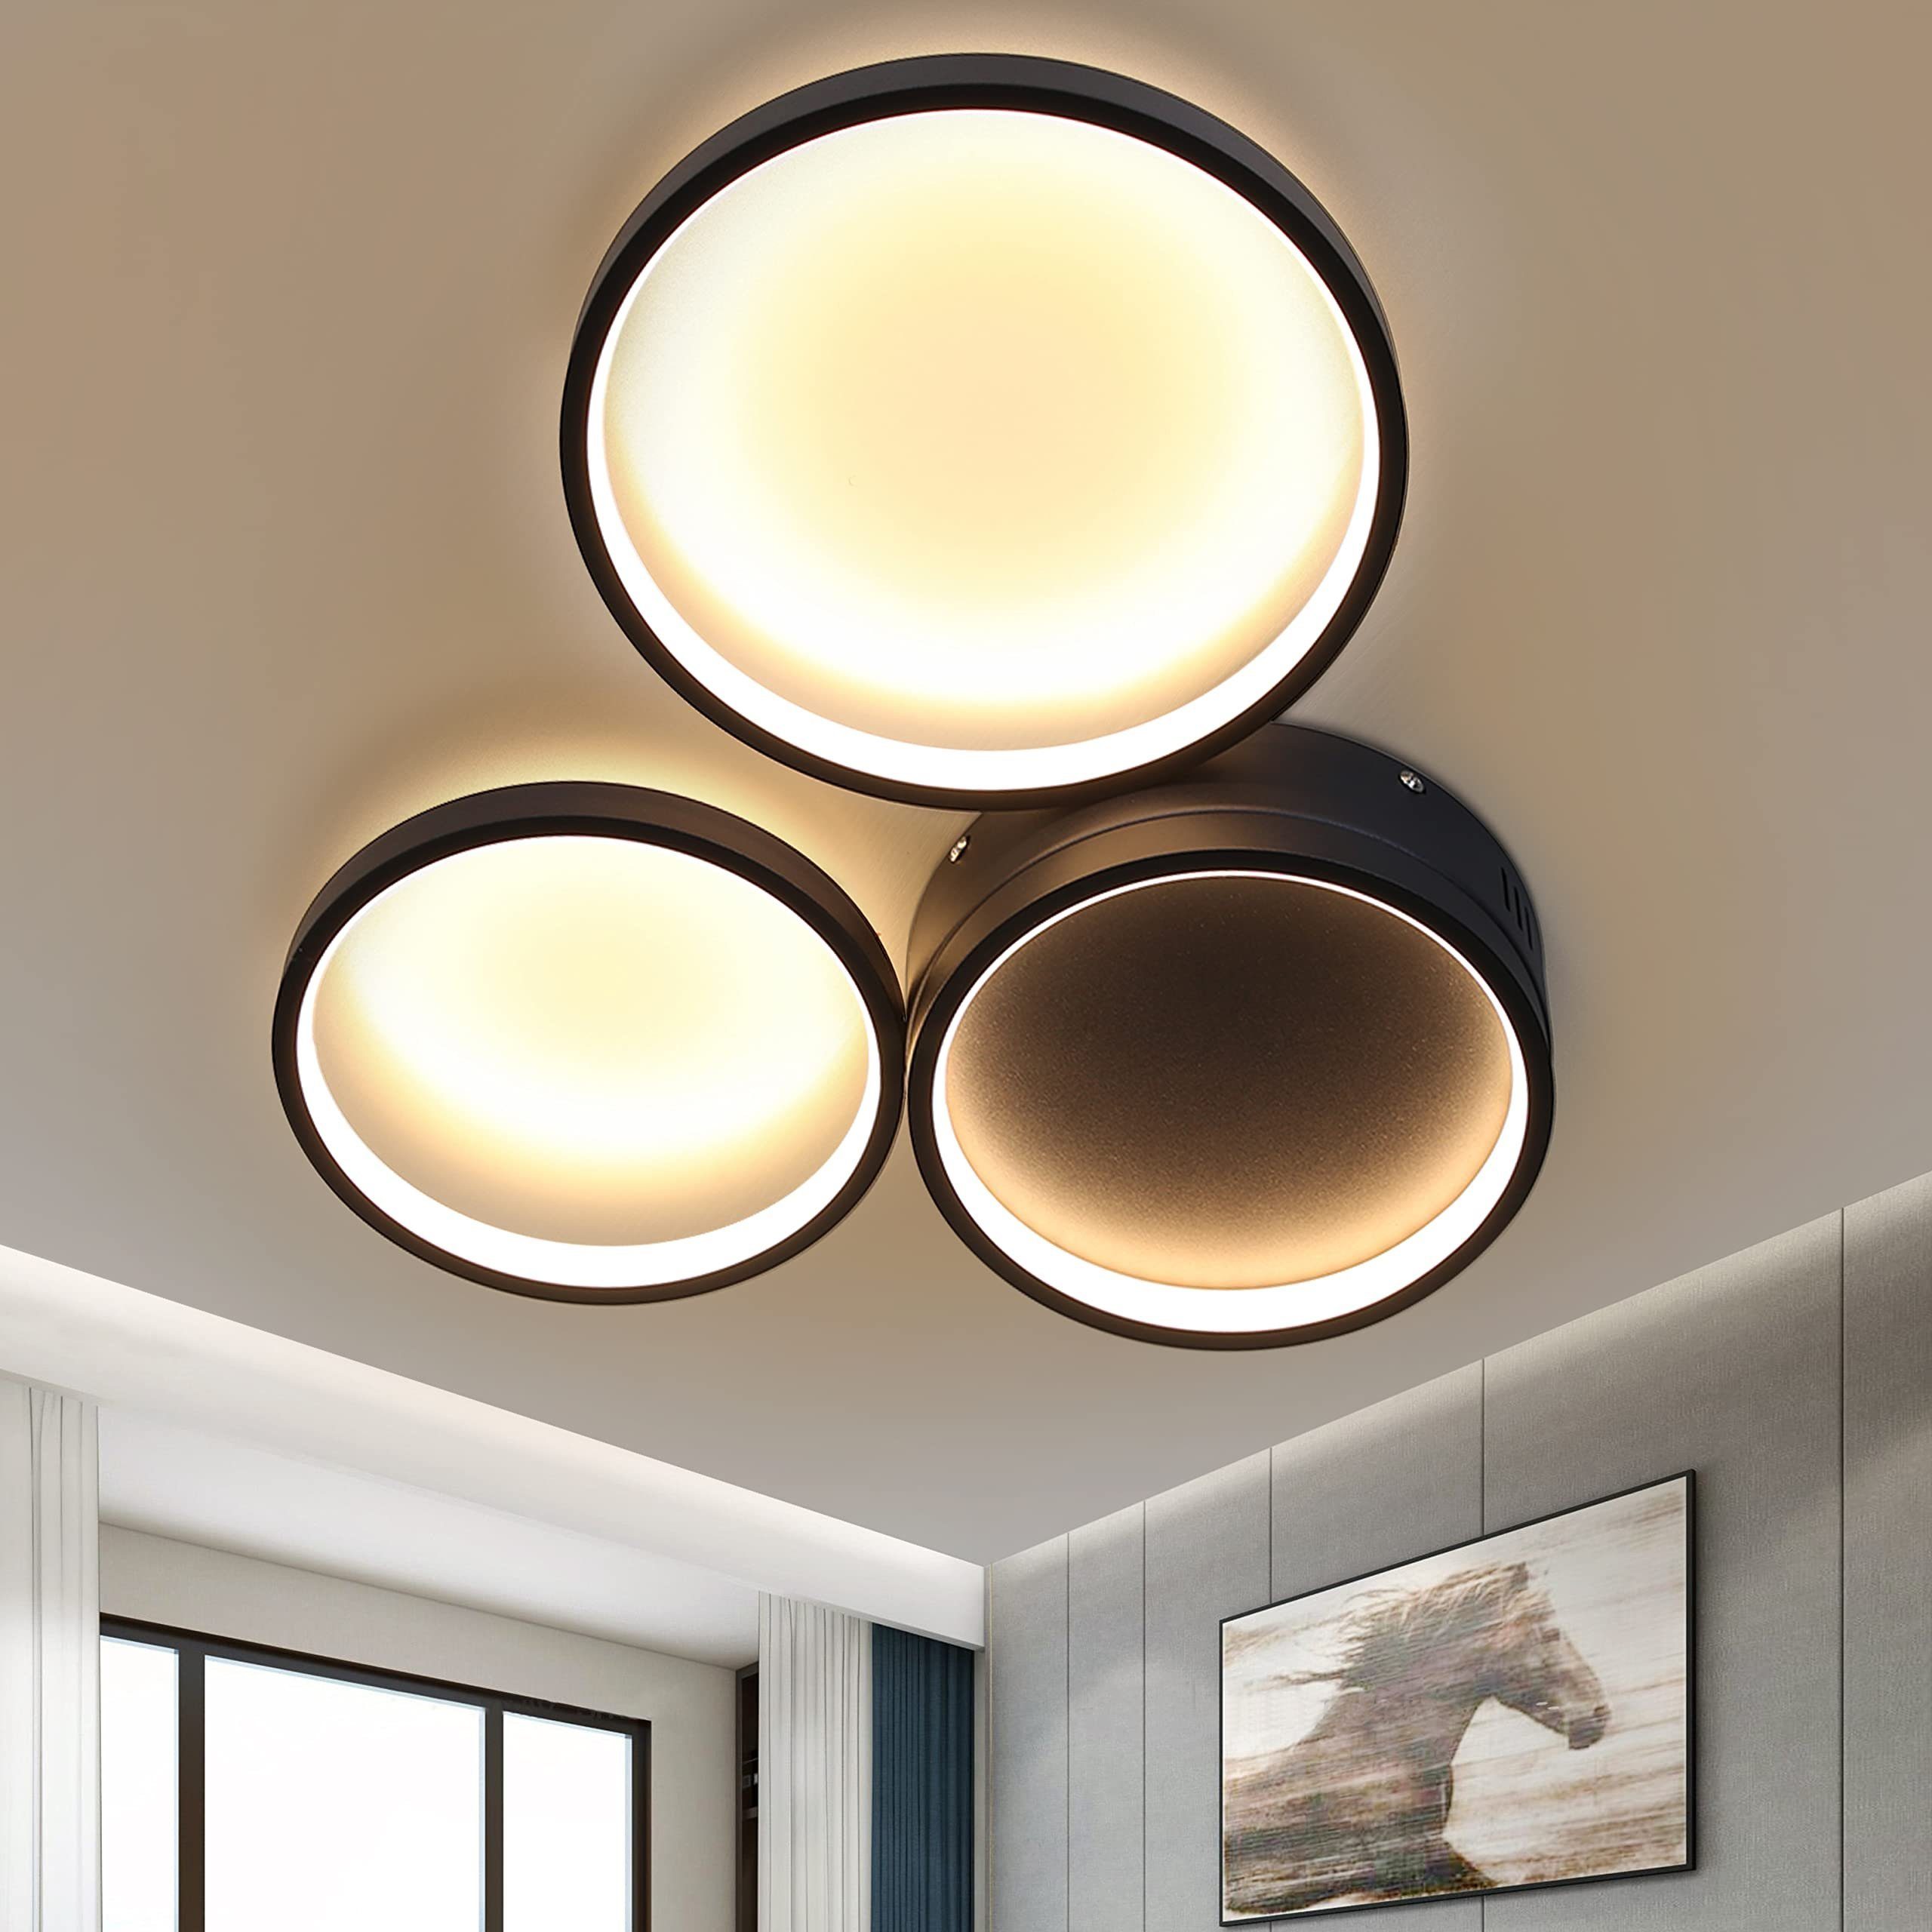 Design LED Deckenlampe Deckenleuchte Lampe Leuchte Jugendzimmer Beleuchtung 